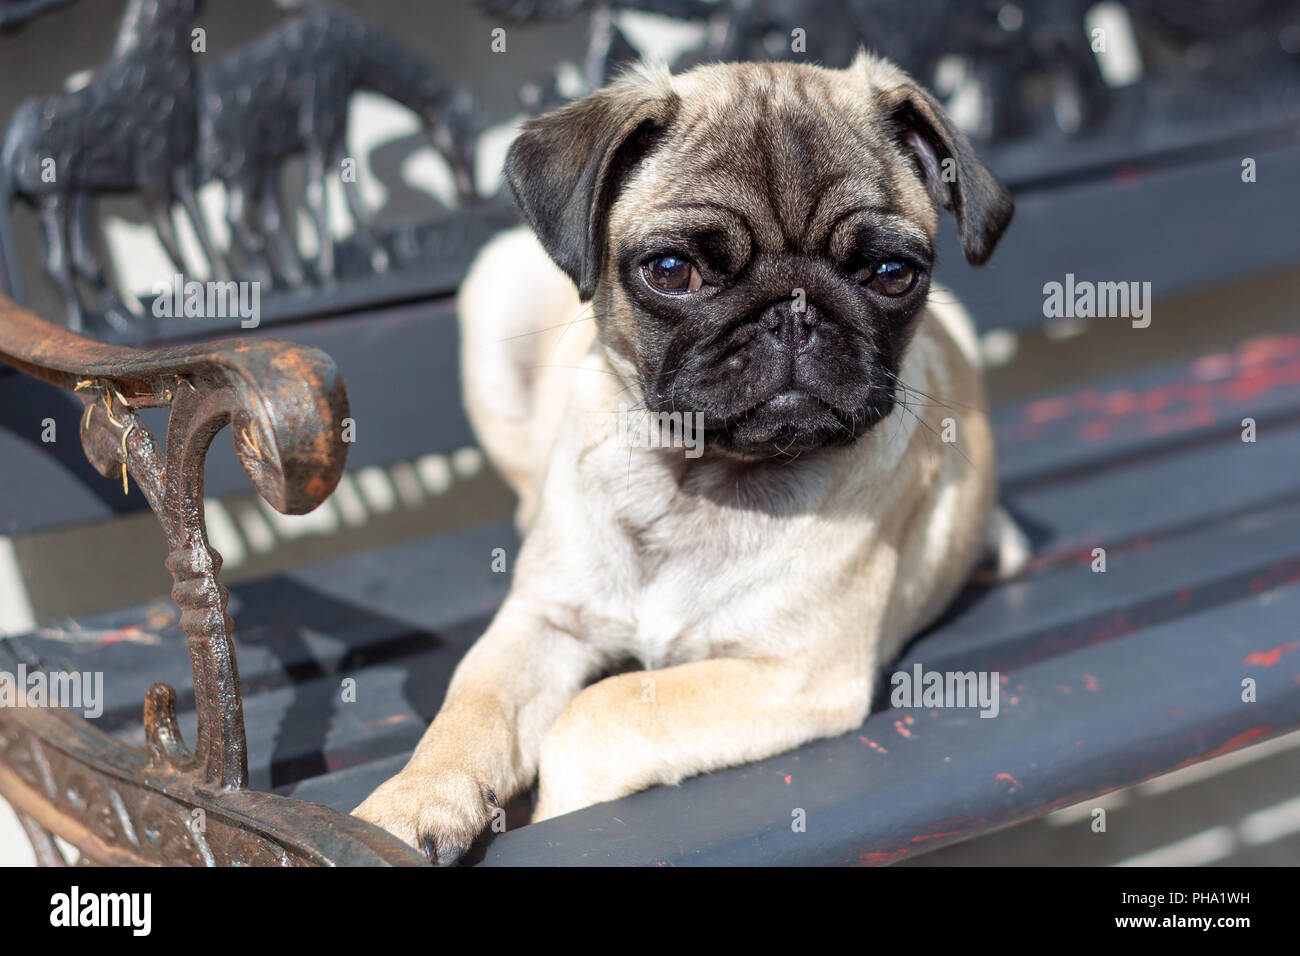 Carino Pug cucciolo su un banco di lavoro Foto Stock